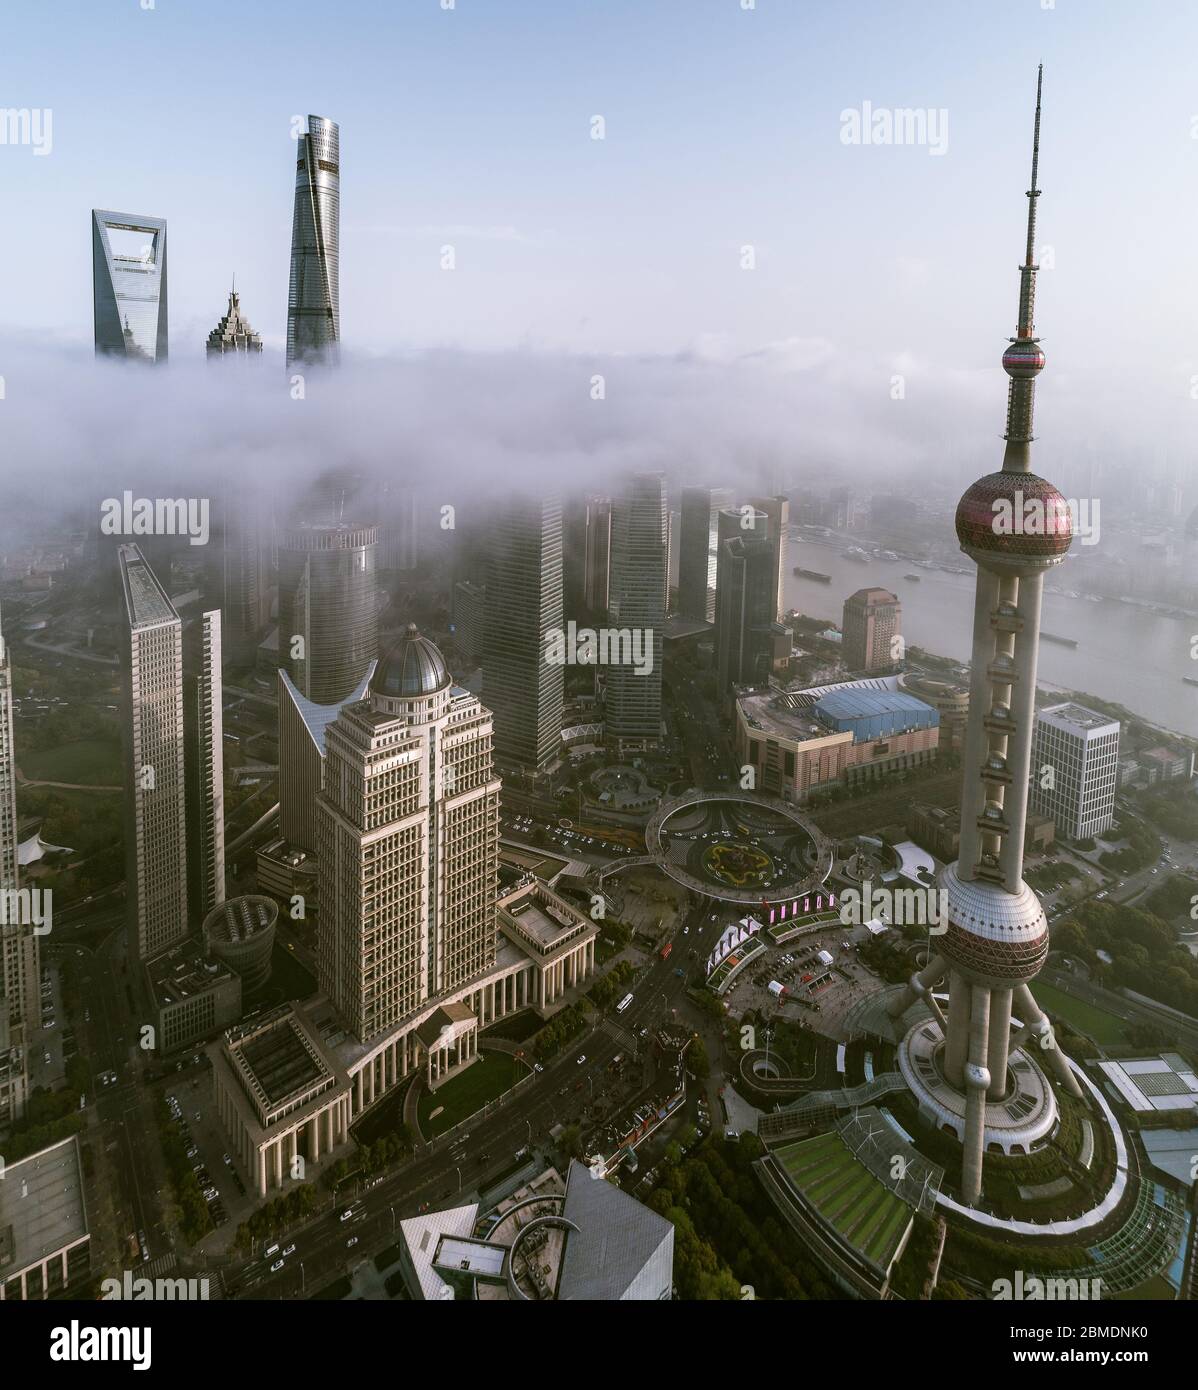 Vista aérea del edificio de Shanghai Landmark en niebla Foto de stock